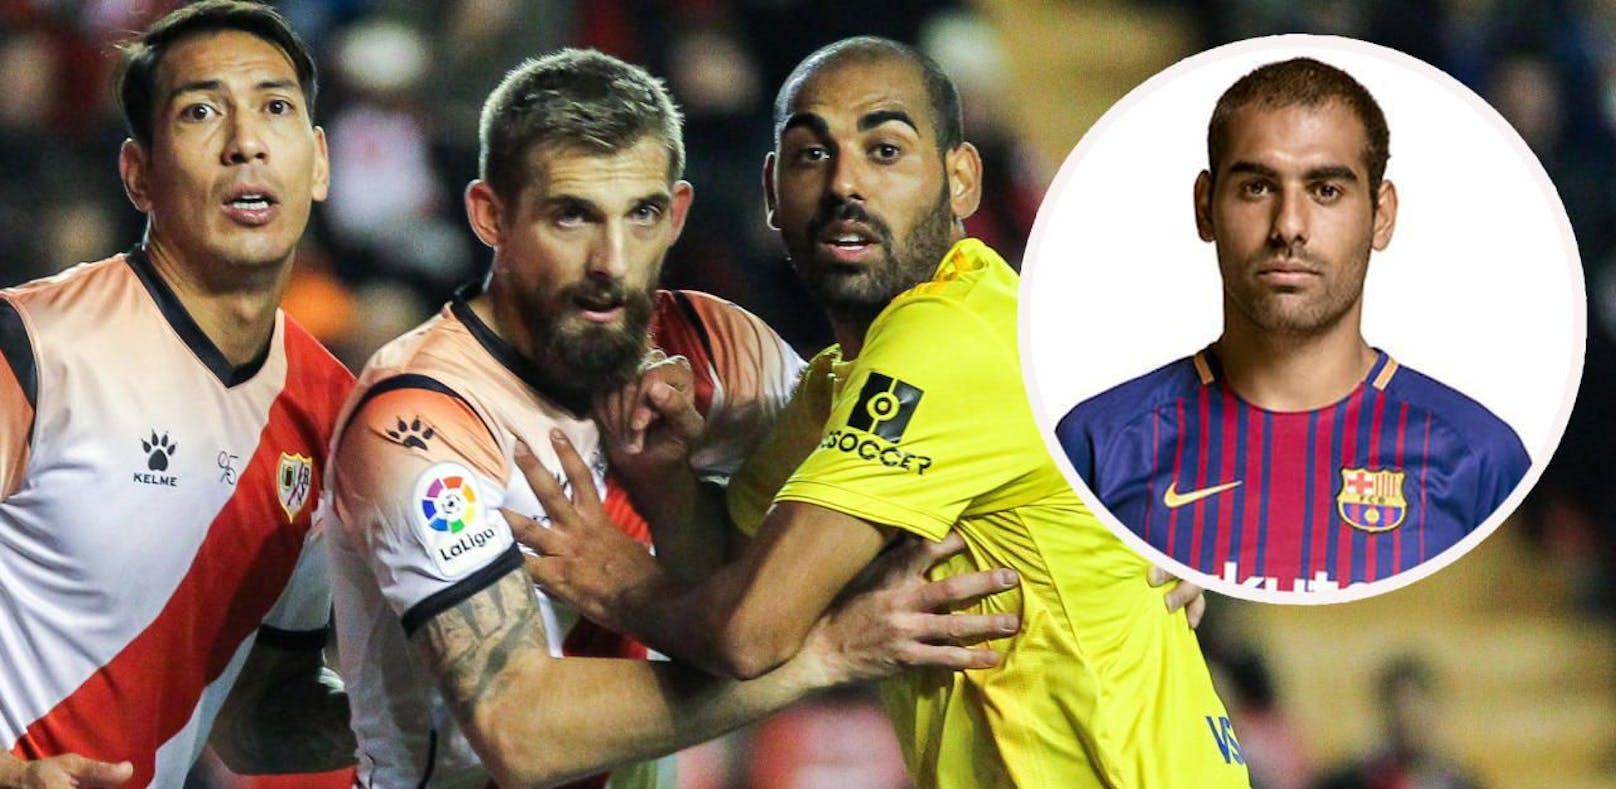 Rechts Rafael Jarque, &quot;Fali&quot;, im gelben Cadiz-Trikot. Beim FC Barcelona kam er nicht über die zweite Mannschaft hinaus.